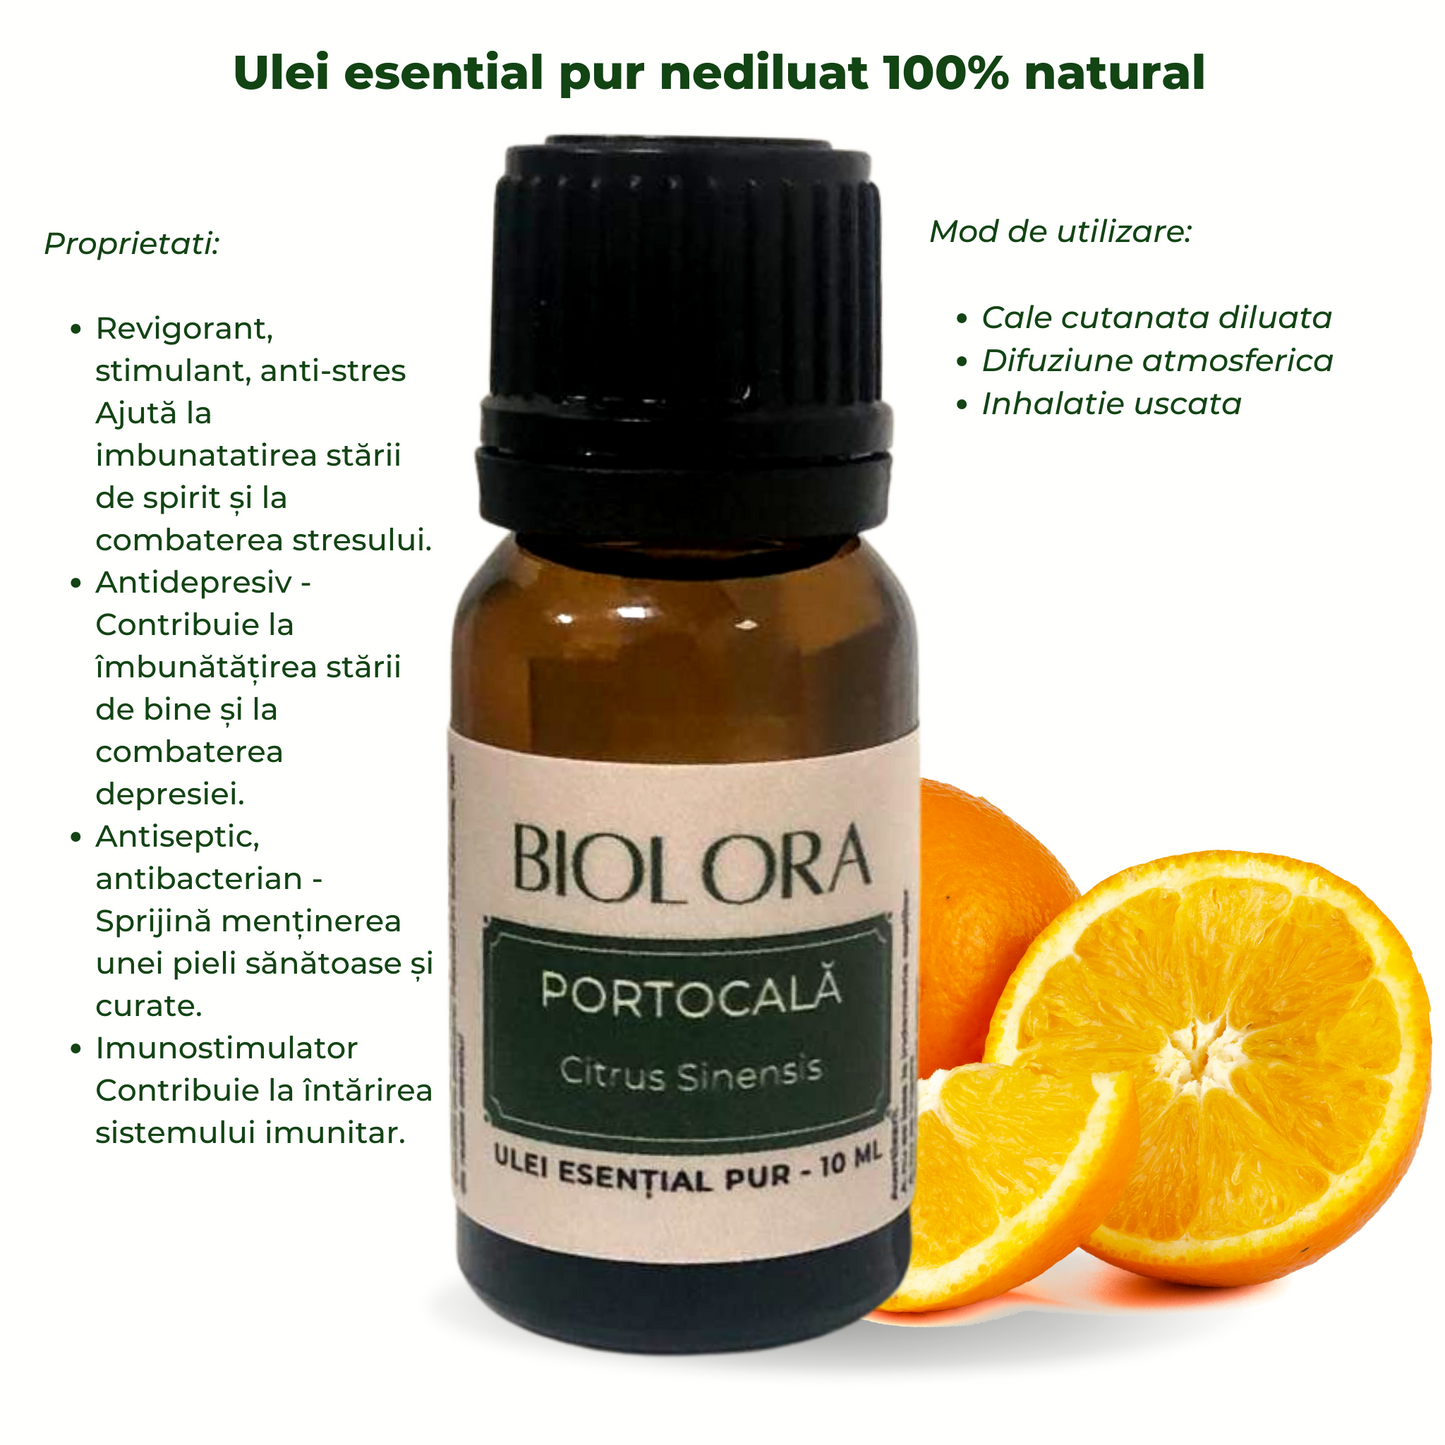 Ulei Esential de Portocala Biolora, aromaterapie, puritate 100%, nediluat, 10 ml